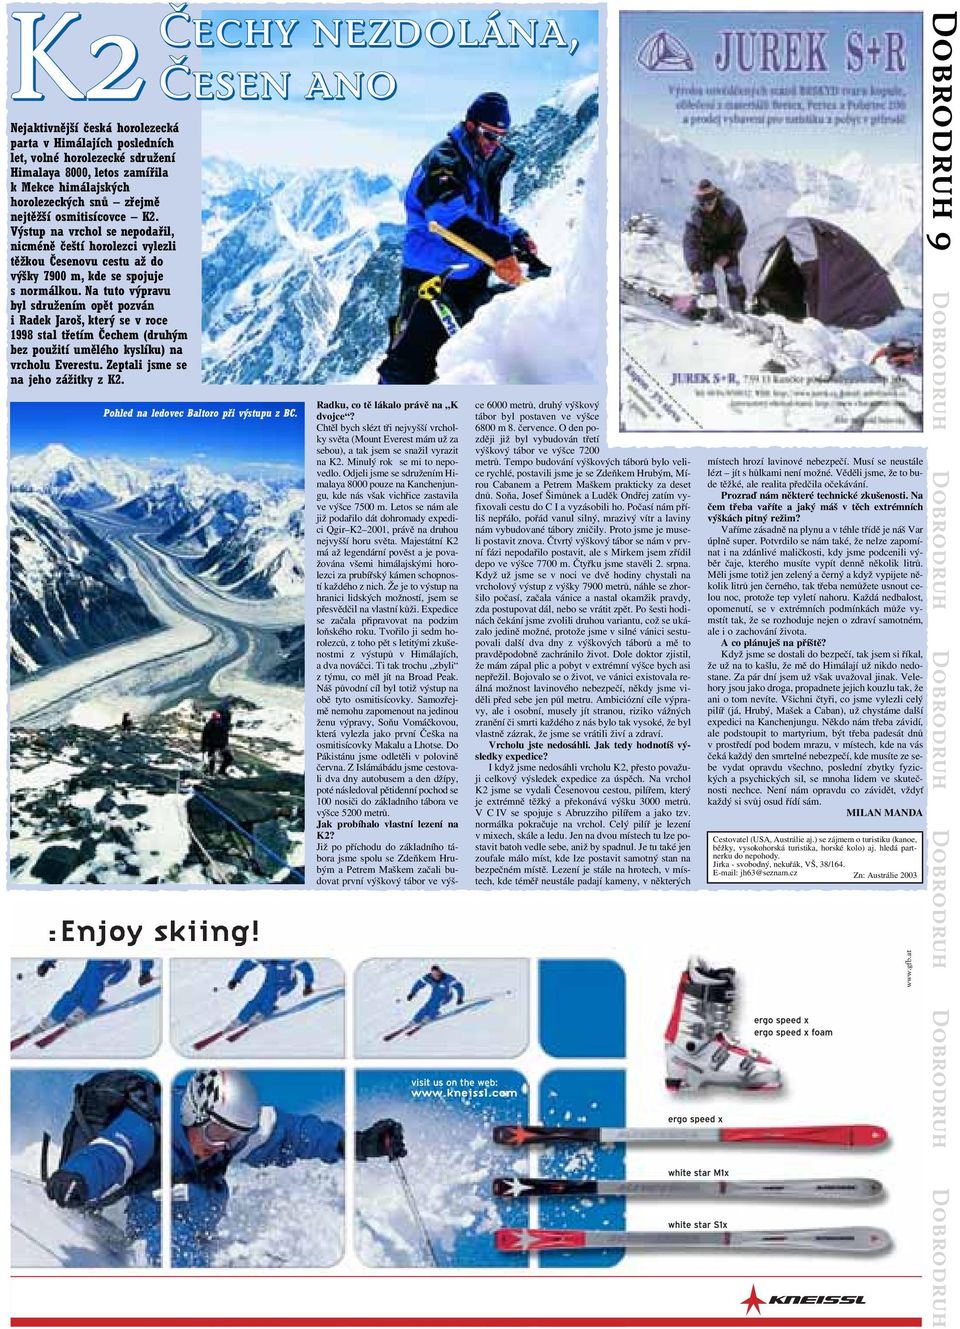 Na tuto výpravu byl sdružením opět pozván i Radek Jaroš, který se v roce 1998 stal třetím Čechem (druhým bez použití umělého kyslíku) na vrcholu Everestu. Zeptali jsme se na jeho zážitky z K2.